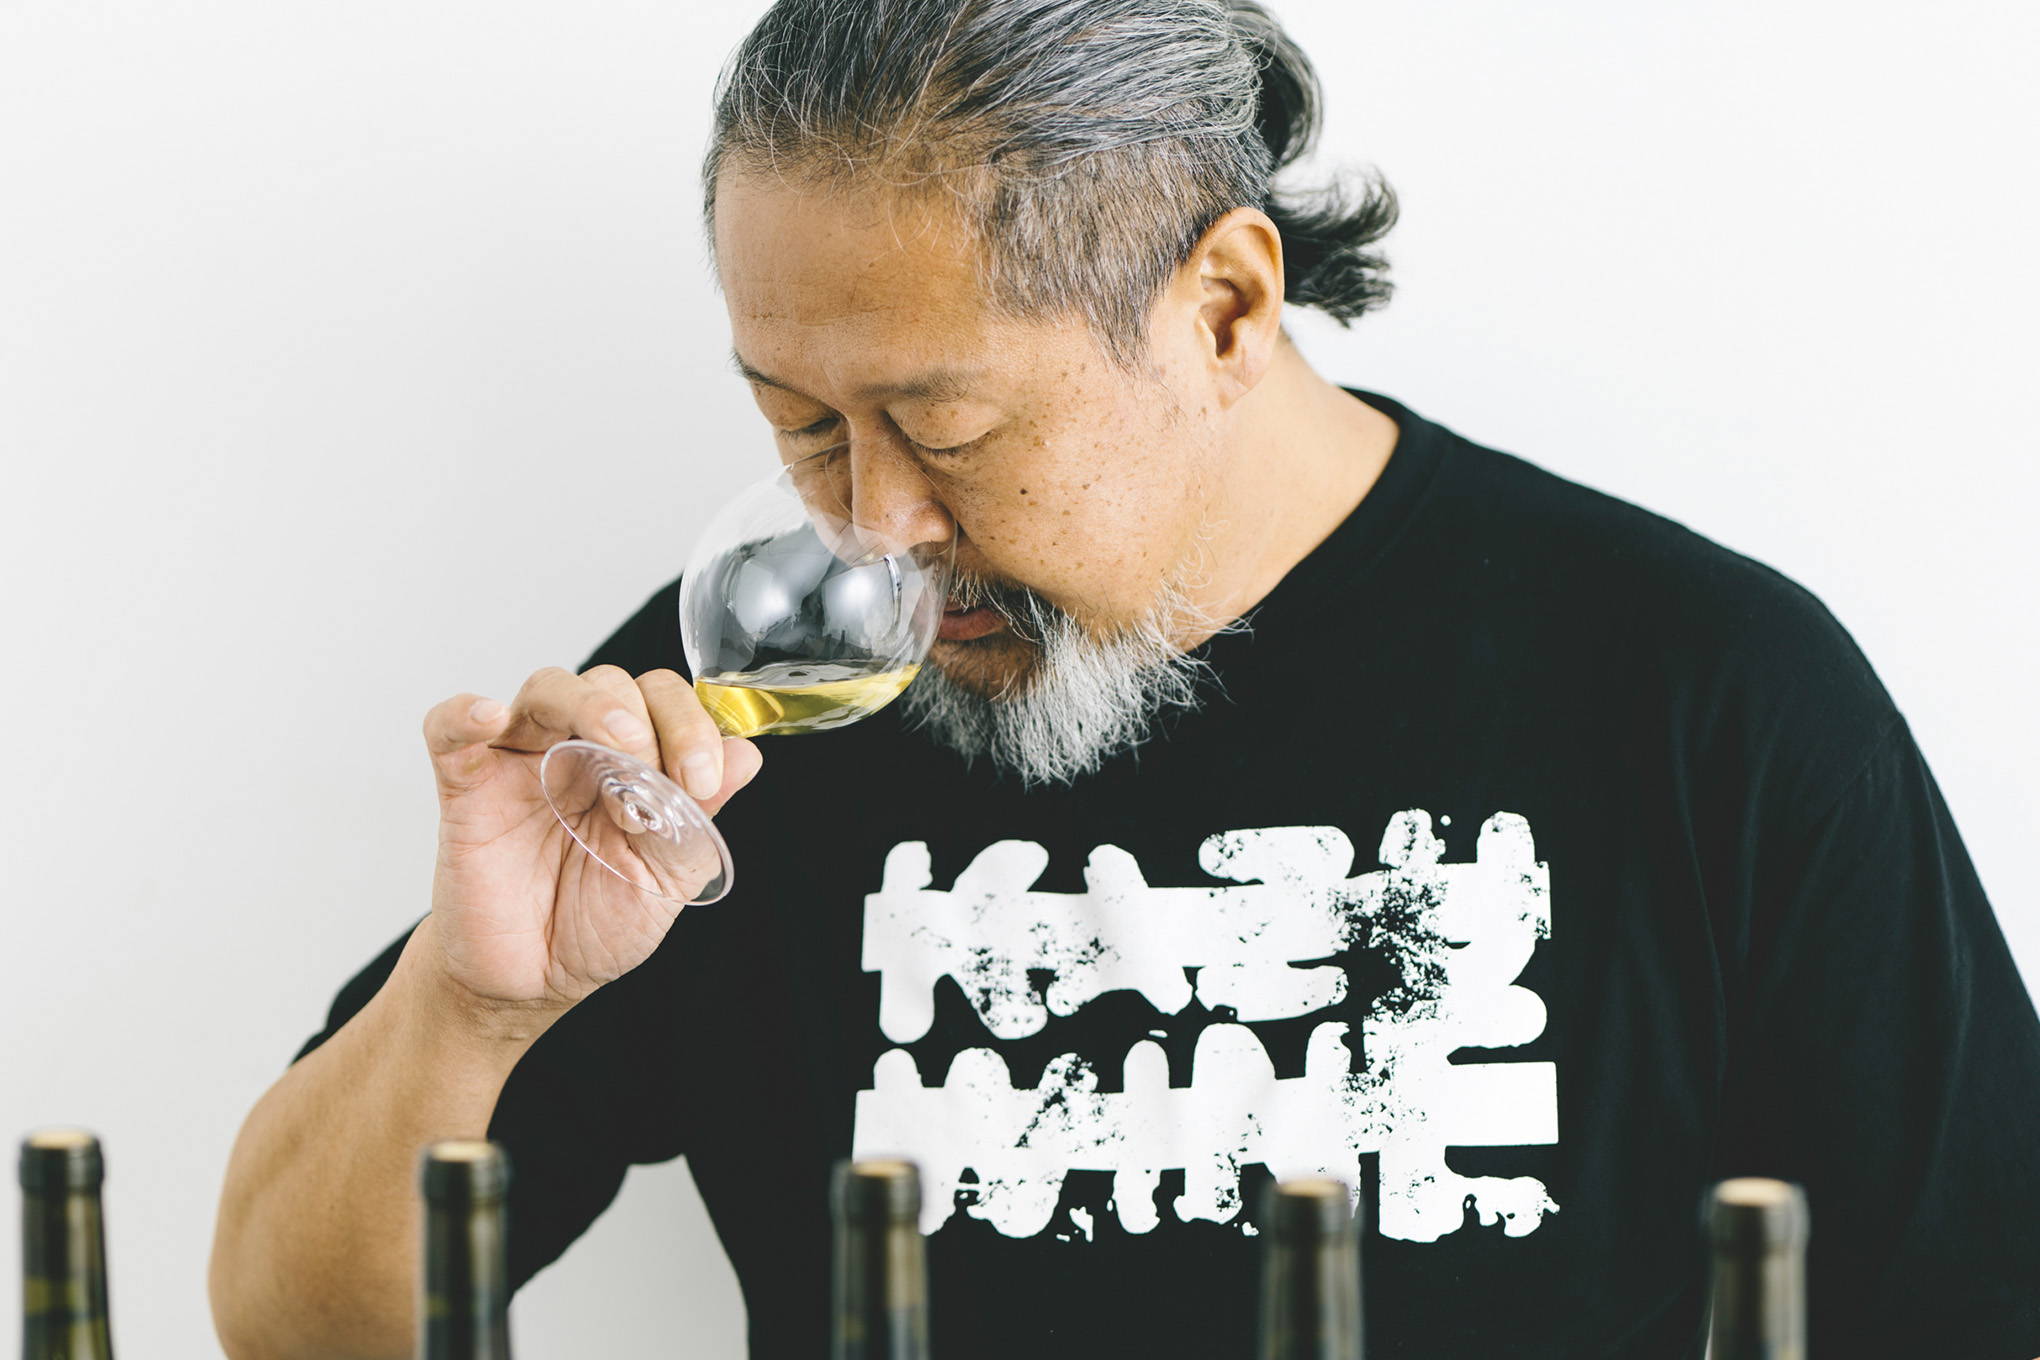 日本でワインを醸造していた頃から、ファンが多かった藤巻さん。努力と経験、ありあまる人間力が、藤巻さんのワインを美味しくしてきた